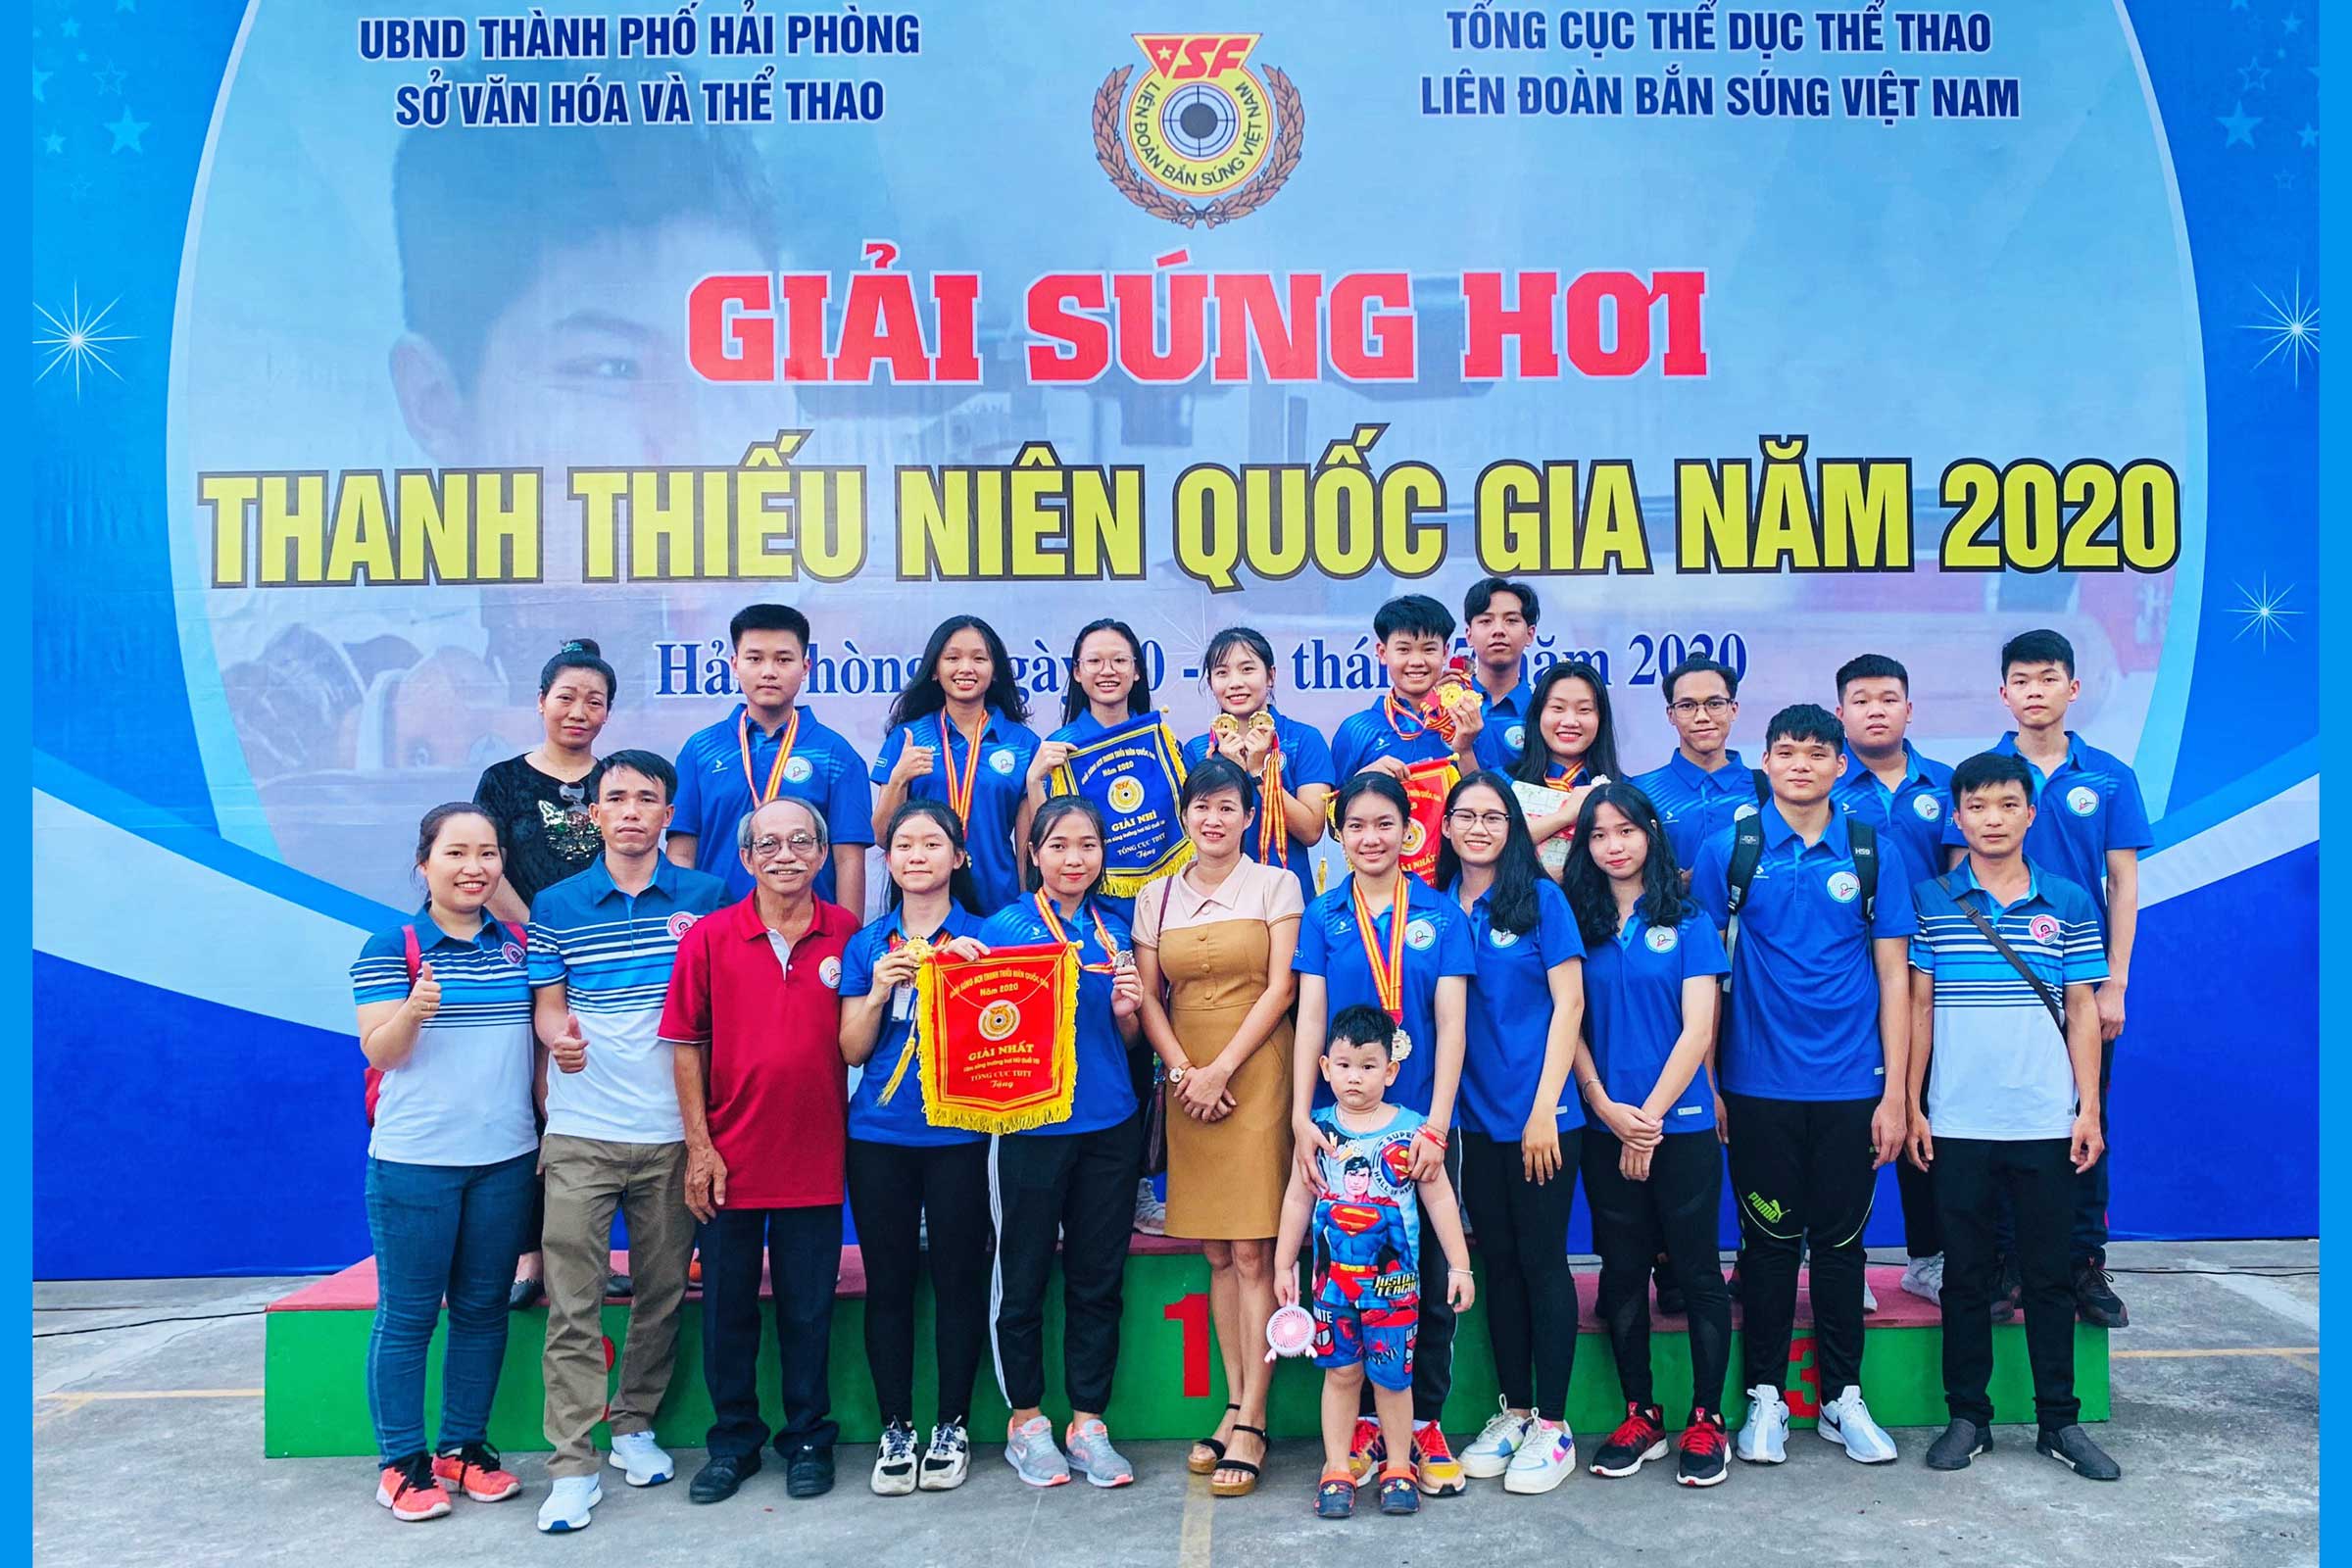 Giải súng hơi thanh thiếu niên quốc gia 2020 - Thành phố Hồ Chí Minh hạng nhất toàn đoàn với 18HCV, 10HCB, 9HCĐ 